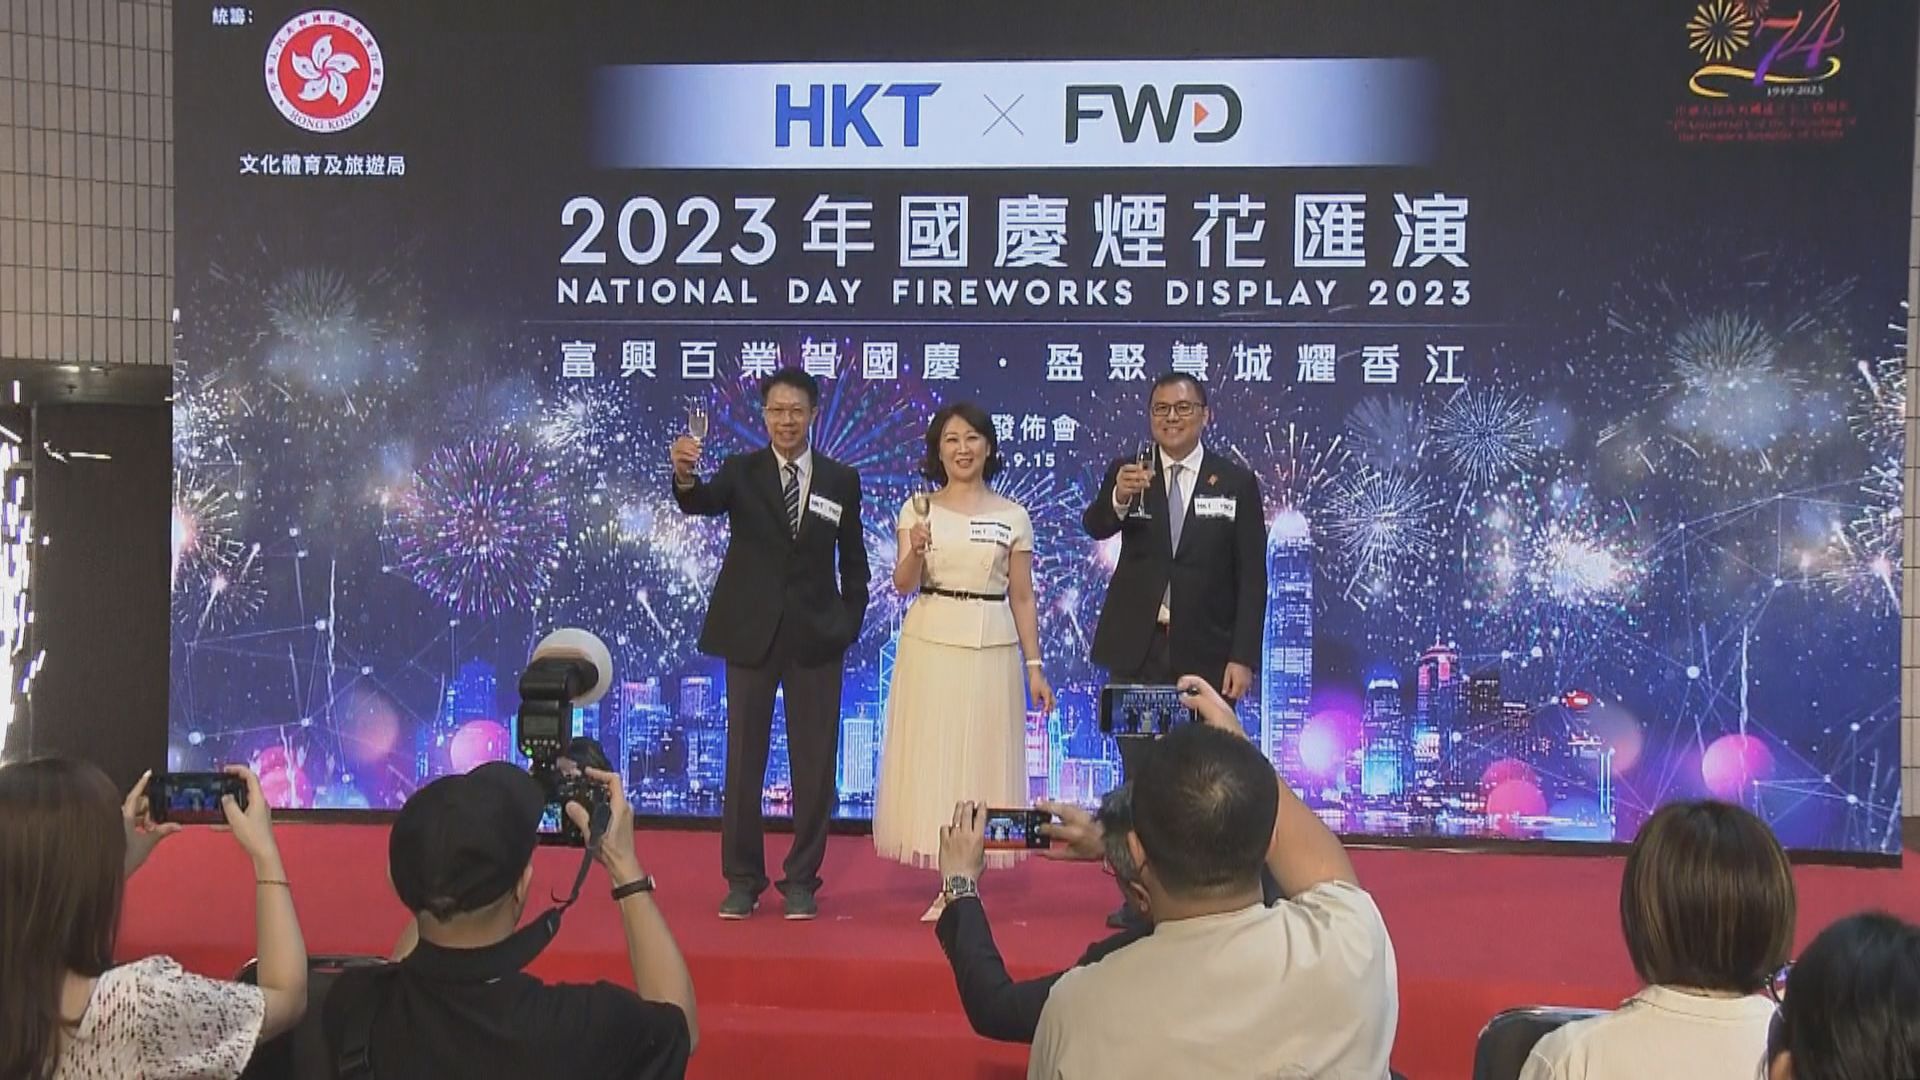 【足本全片】「HKT x FWD 2023年國慶煙花匯演」記者會